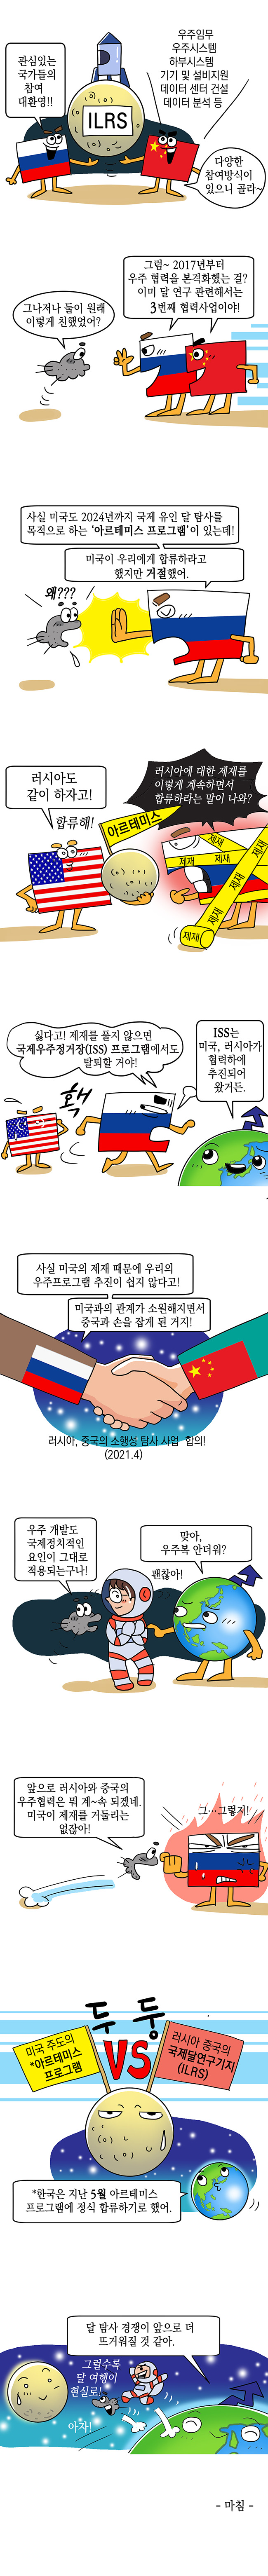 러시아, 중국과 국제달연구기지 건설 협력 계획 발표